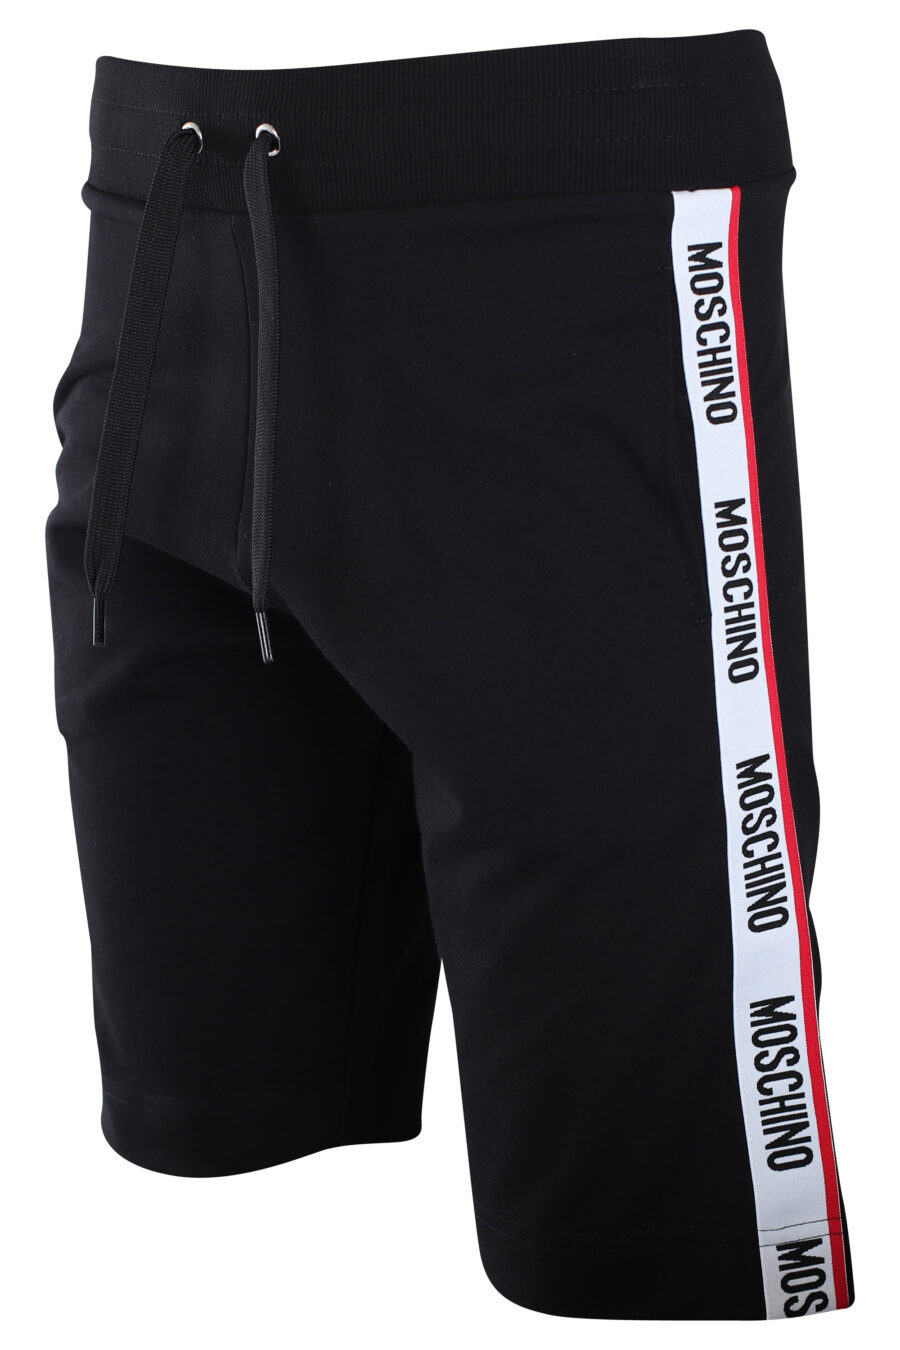 Pantalón de chándal corto negro con logo en banda laterales - IMG 2236